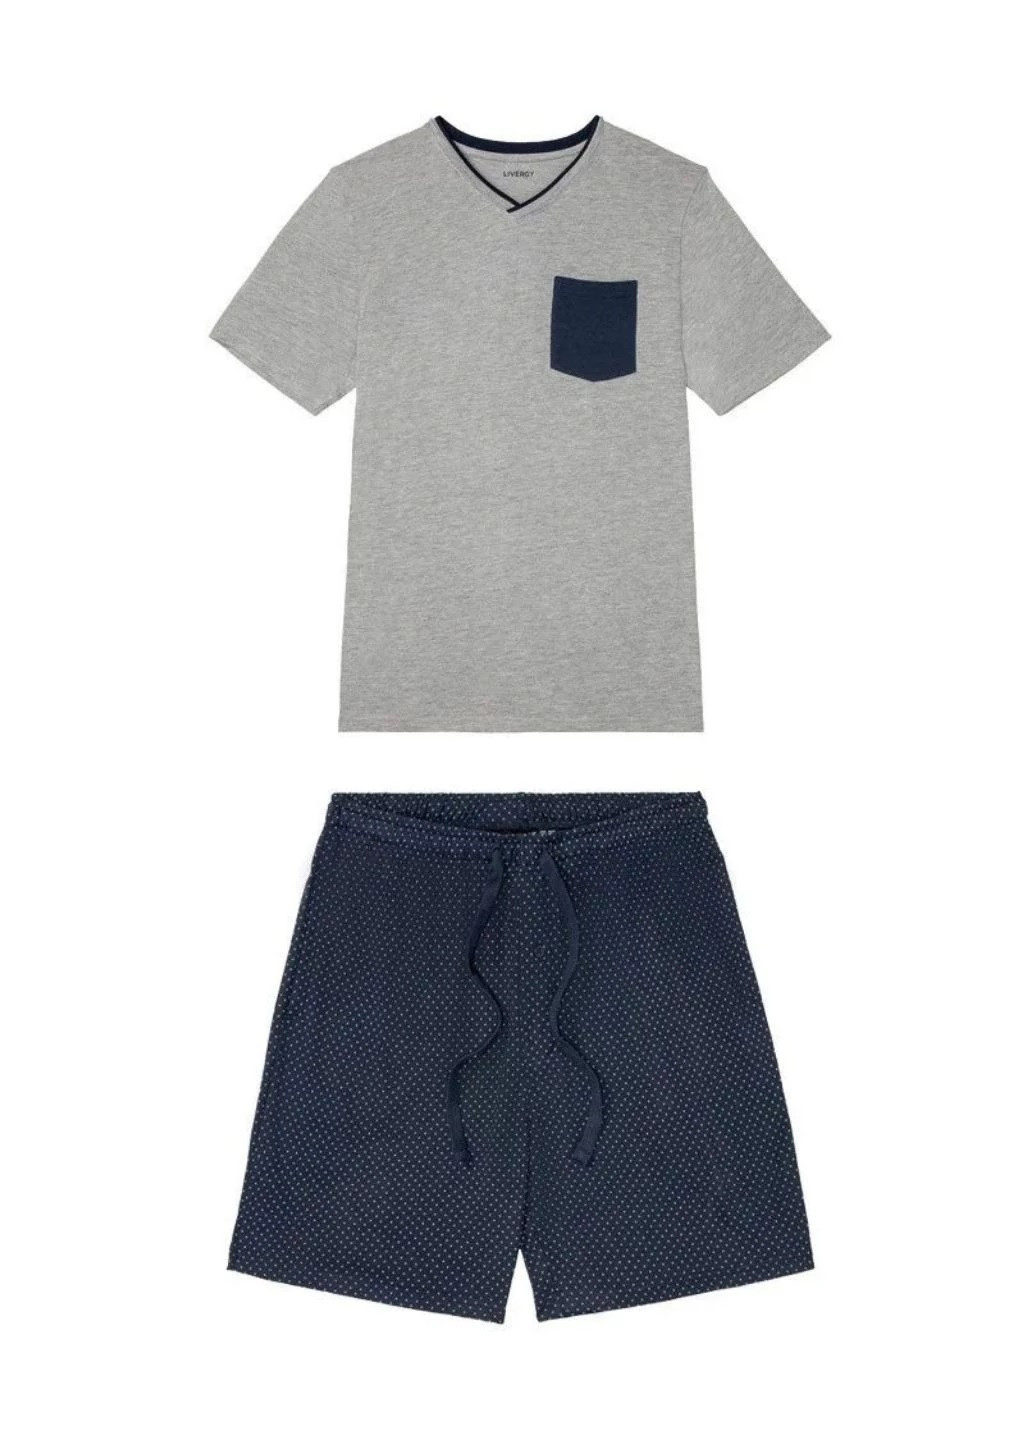 Піжама (футболка, шорти) Livergy футболка + шорти геометрична комбінована домашня модал, трикотаж, бавовна